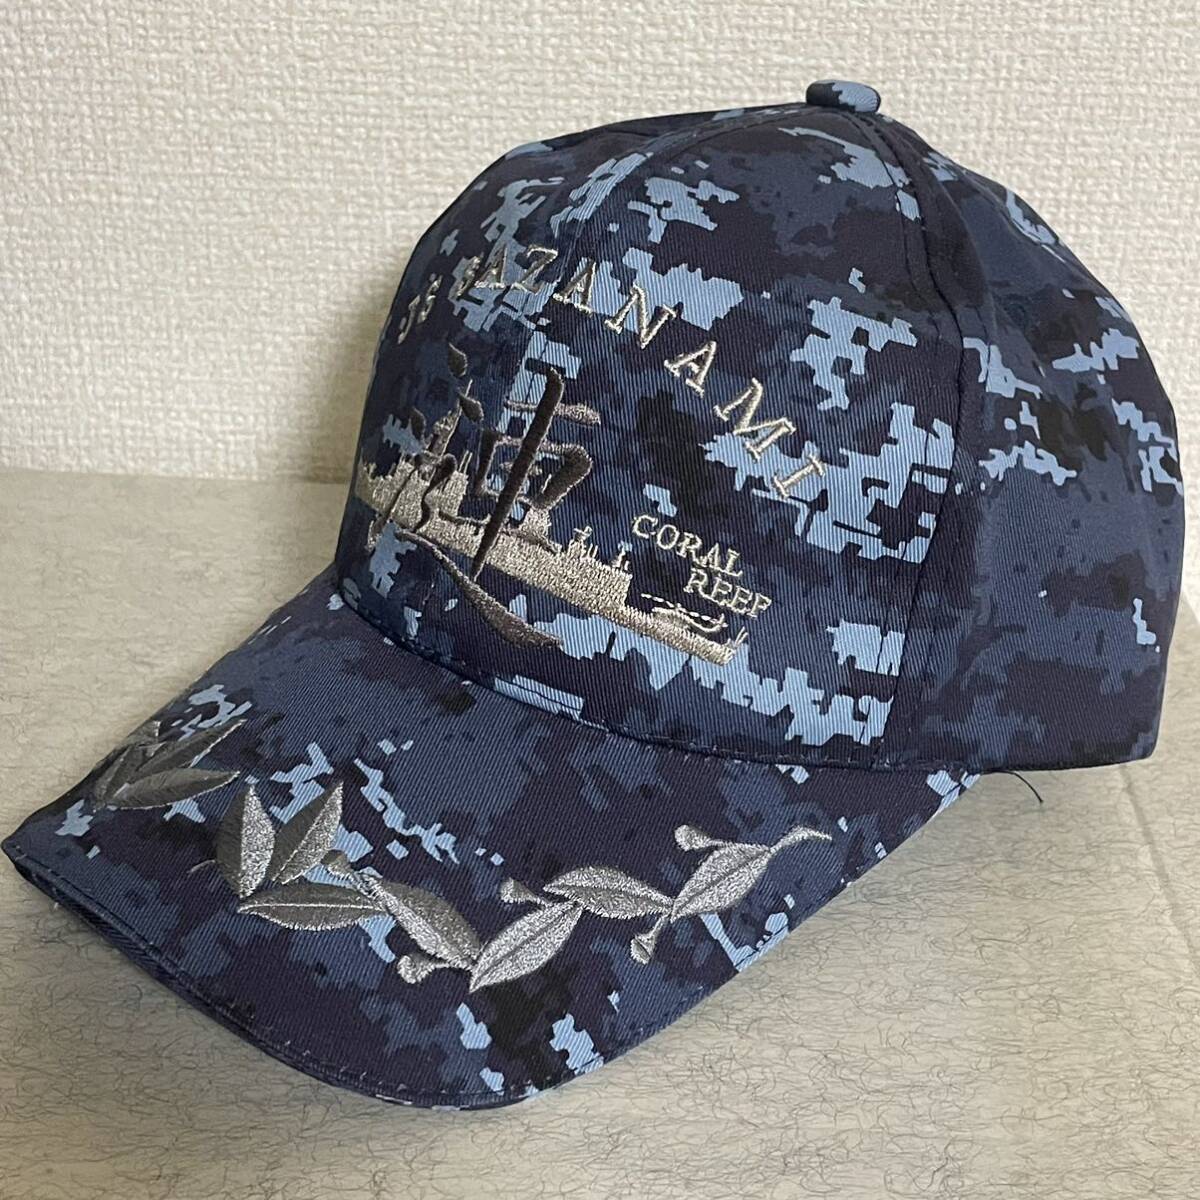 海上自衛隊 呉基地護衛艦さざなみ 漣佐官用迷彩識別帽・部隊帽 キャップの画像2